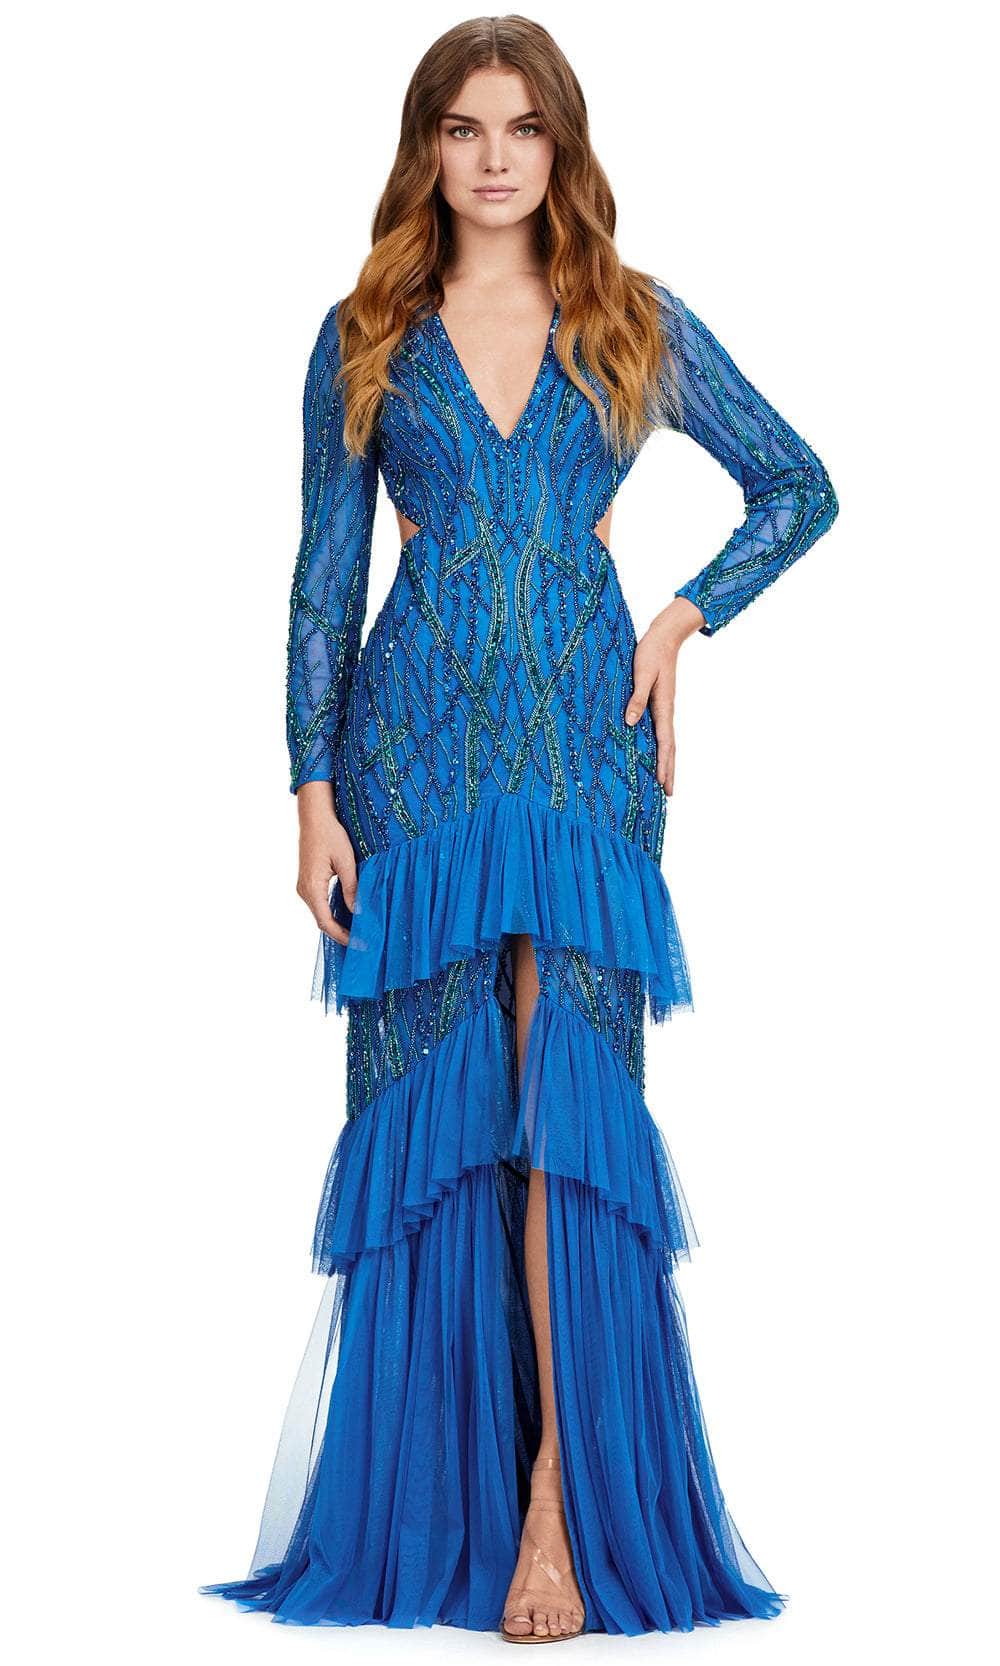 Ashley Lauren 11436 - Sequin Embellished V-Neck Gown 00 /  Peacock